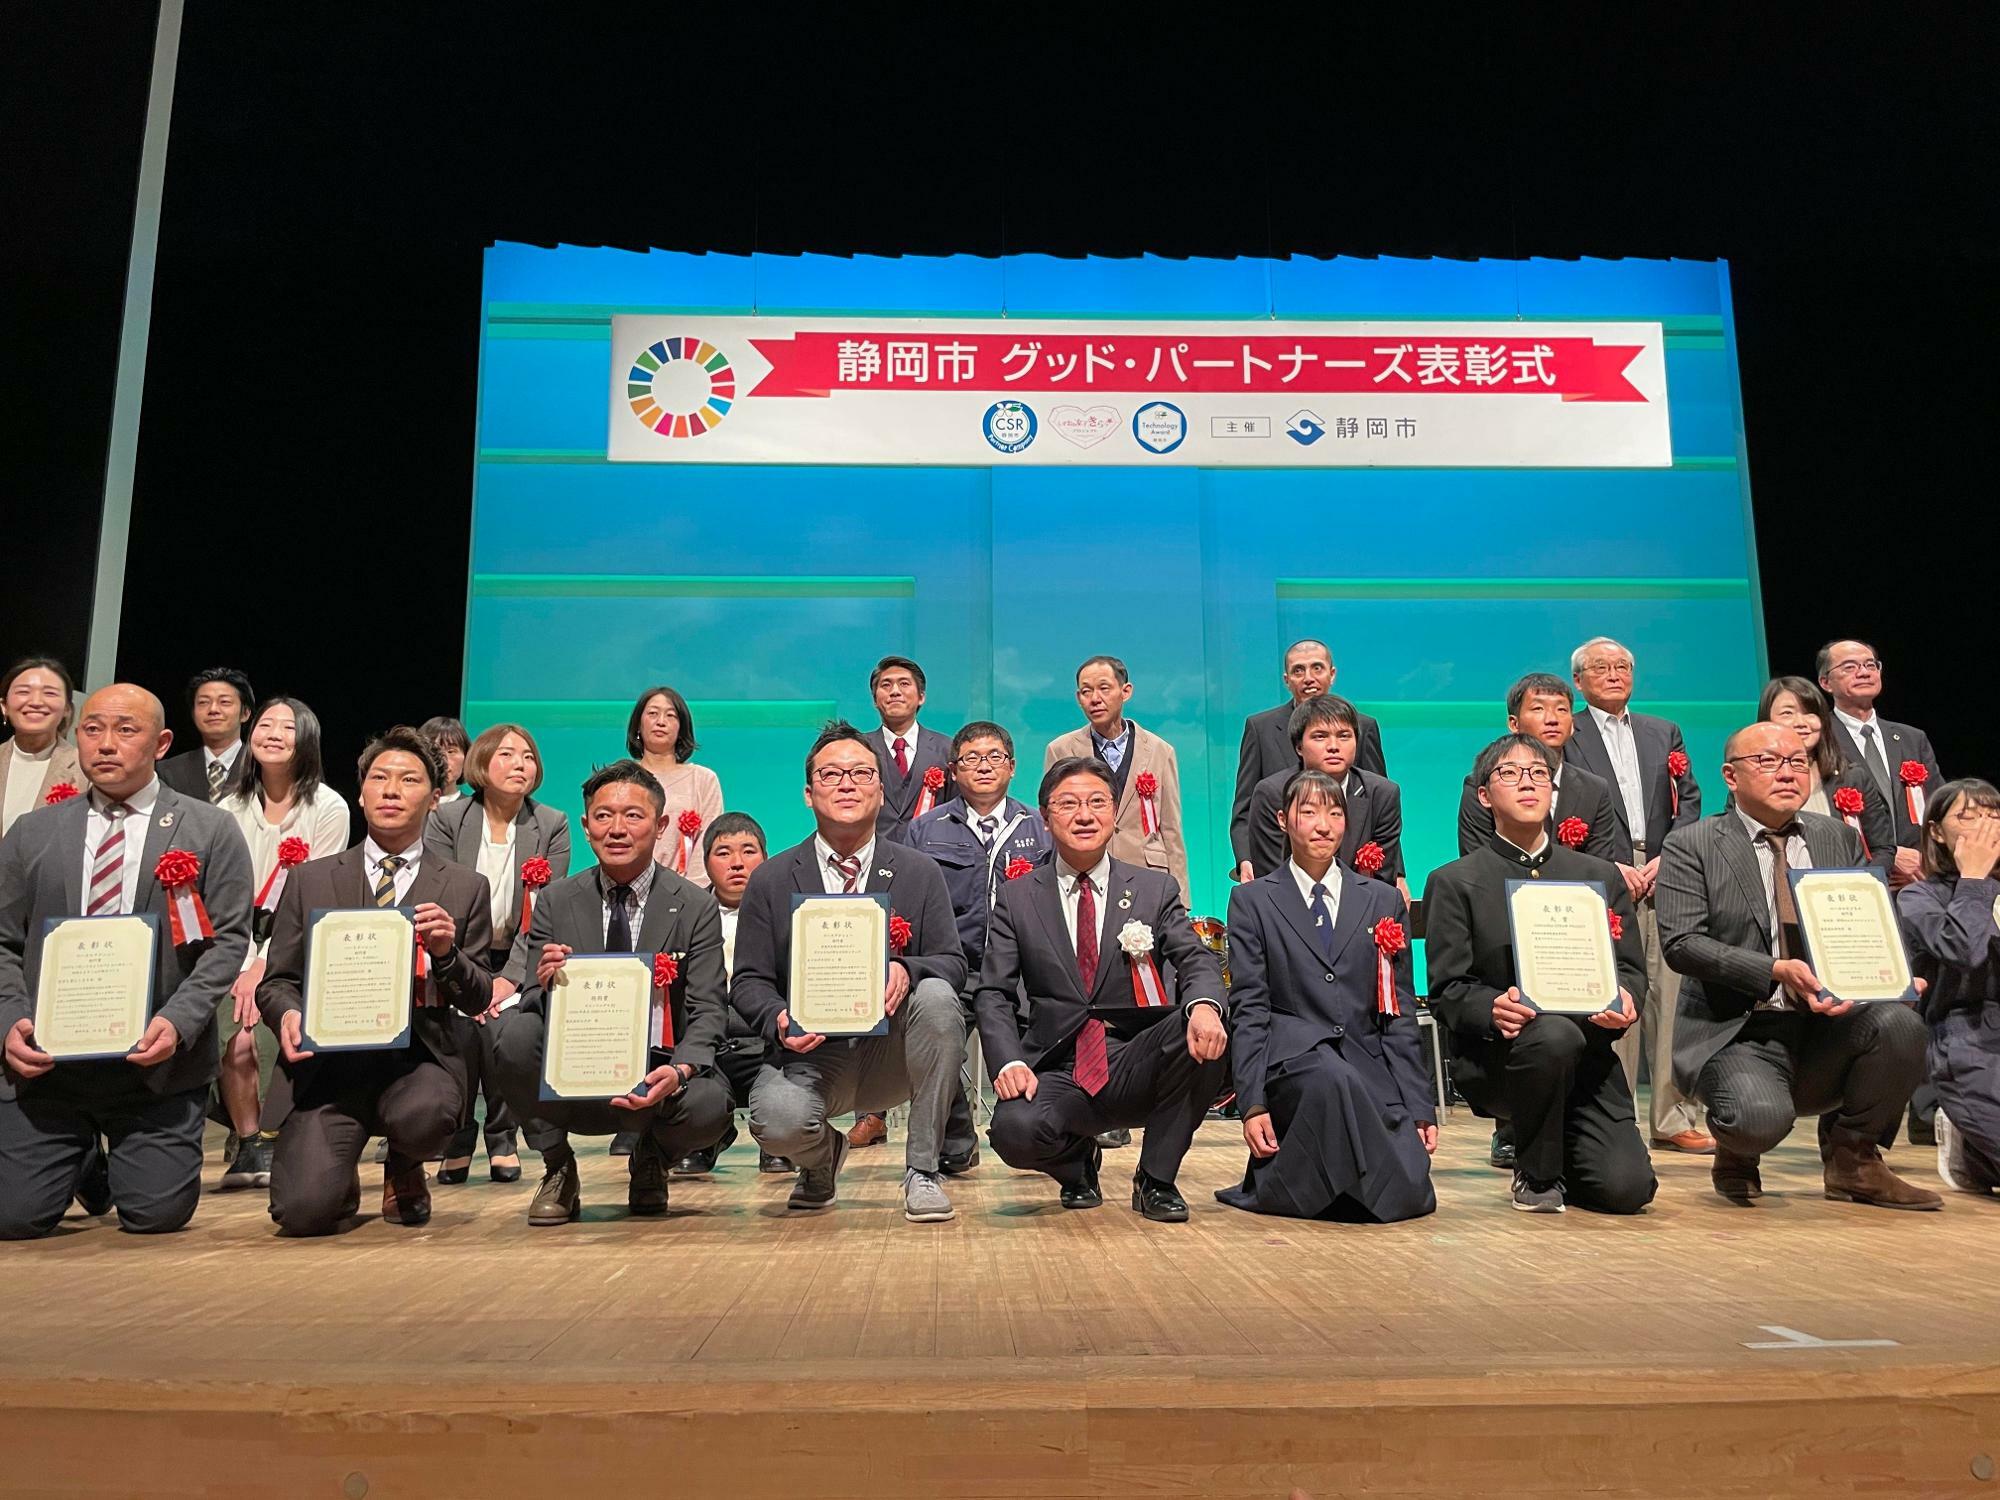 前列左から4番目が今井代表。静岡市街の受賞団体は、あさおのSDGsのみとのこと。